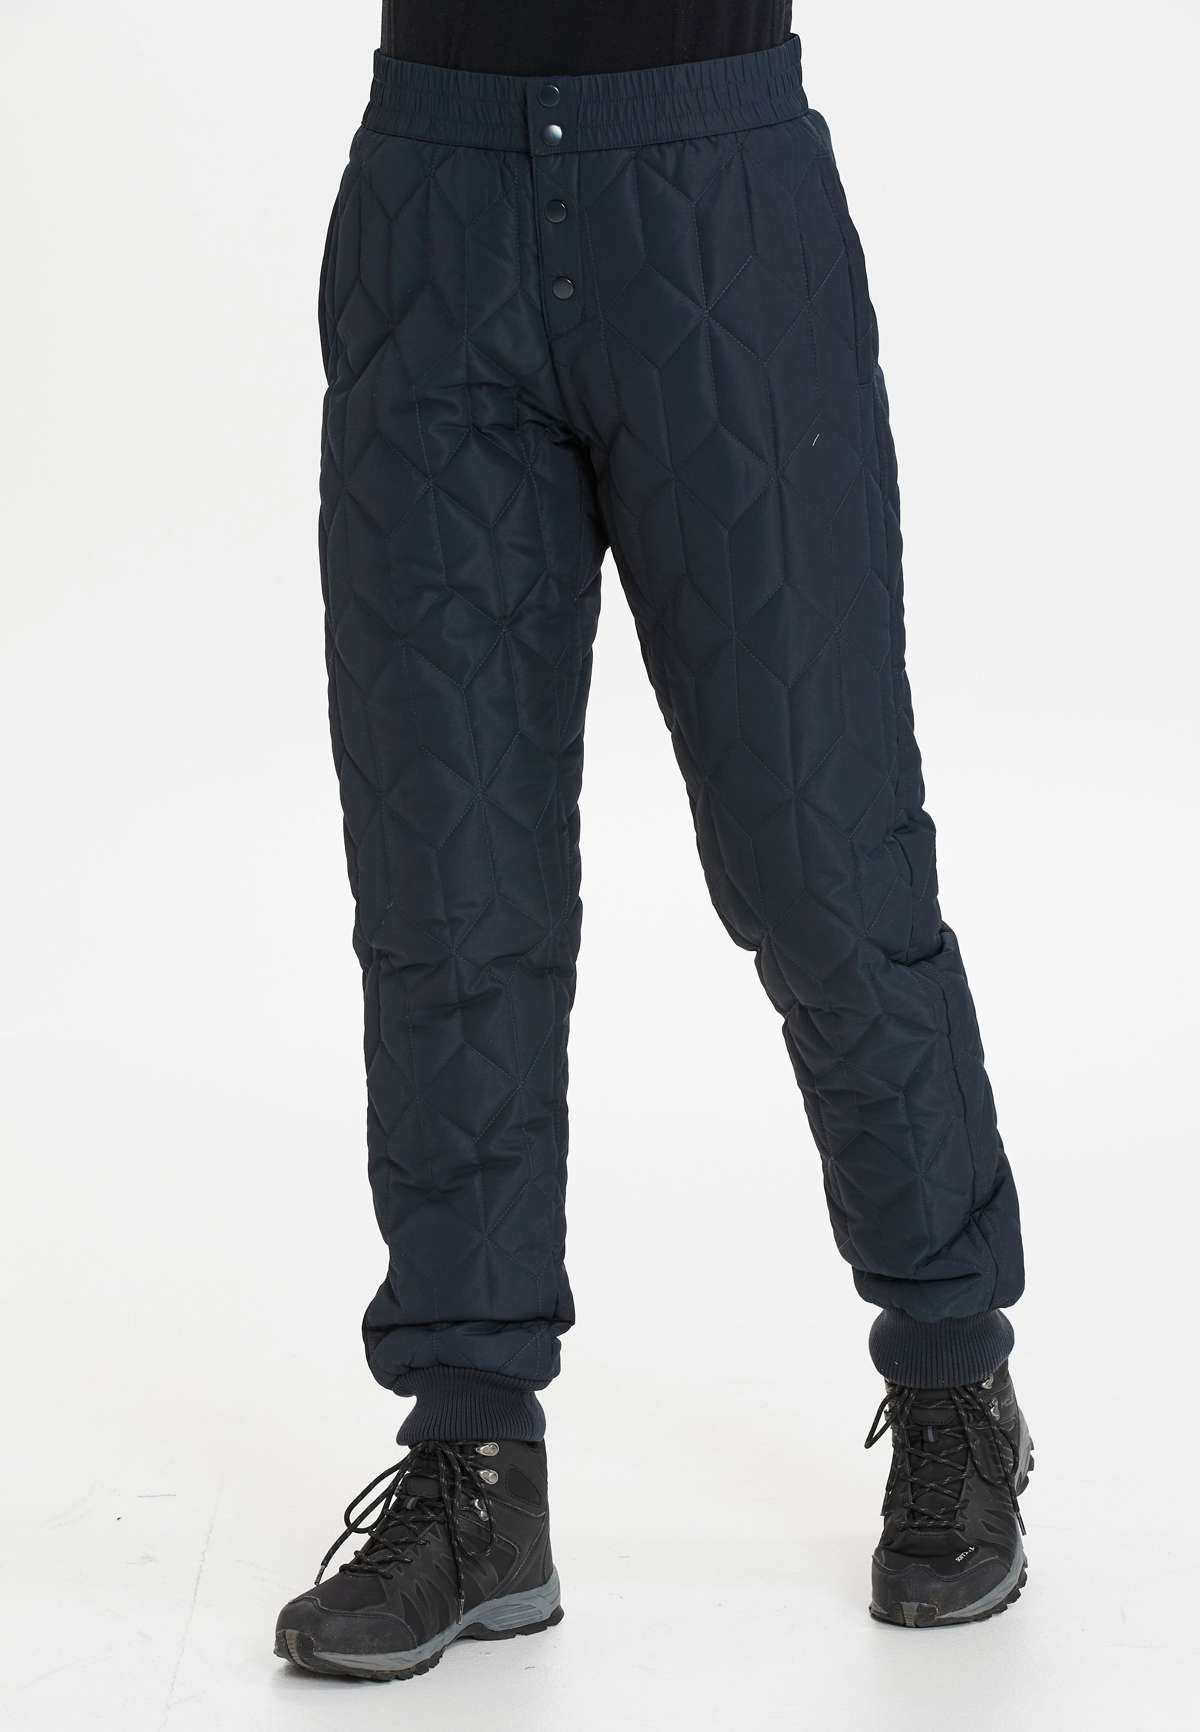 Тканевые брюки, (0 шт.), модного стеганого дизайна.